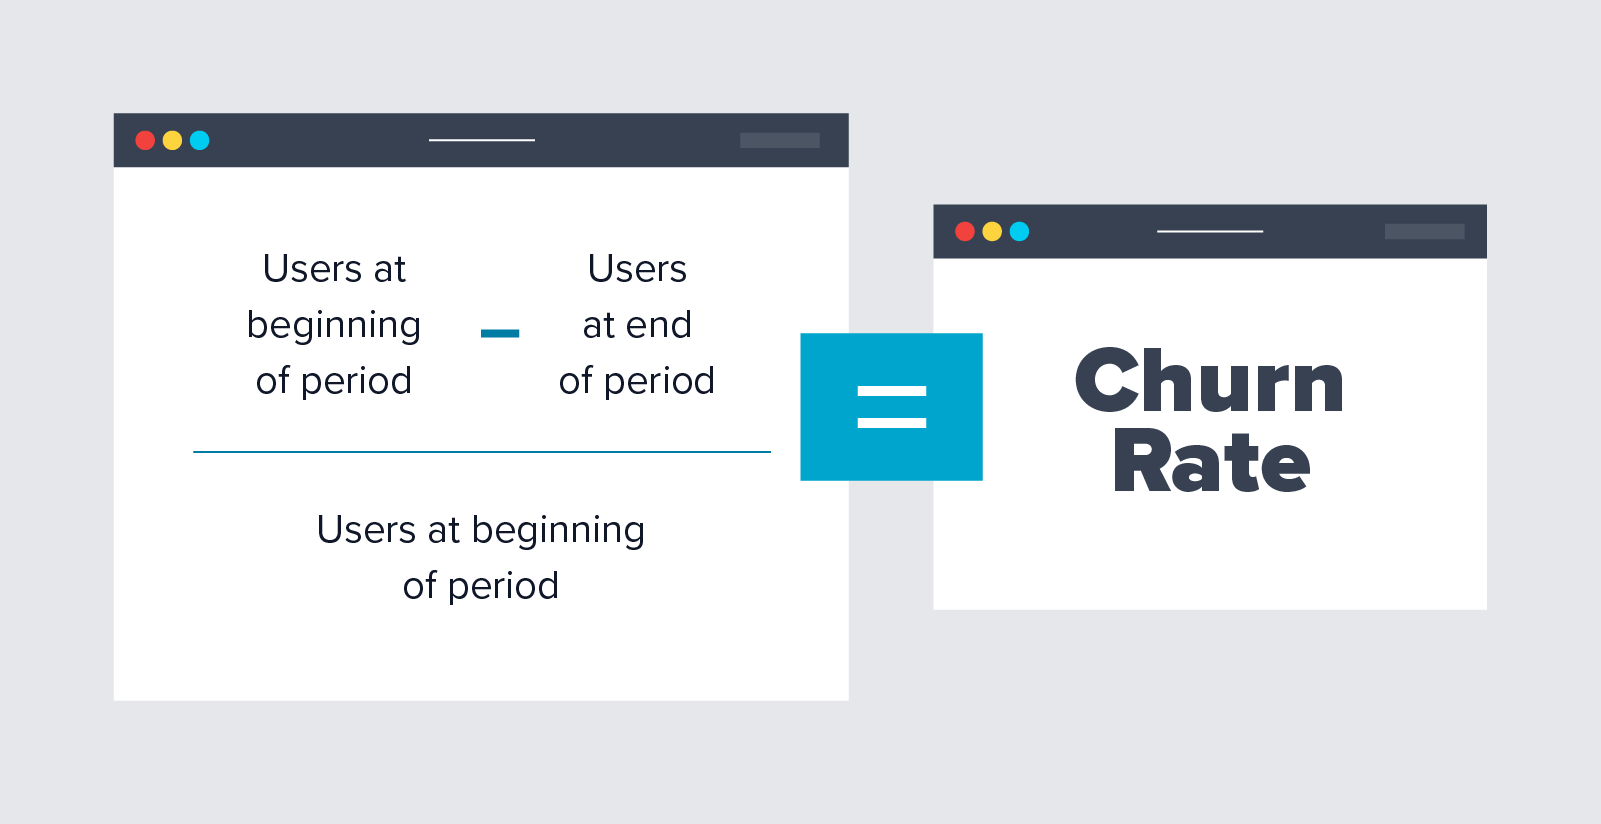 كيفية حساب معدل التغيير: المستخدمون في بداية الفترة مطروحًا منه المستخدم في نهاية الفترة ، مقسومًا على المستخدمين في بداية الفترة